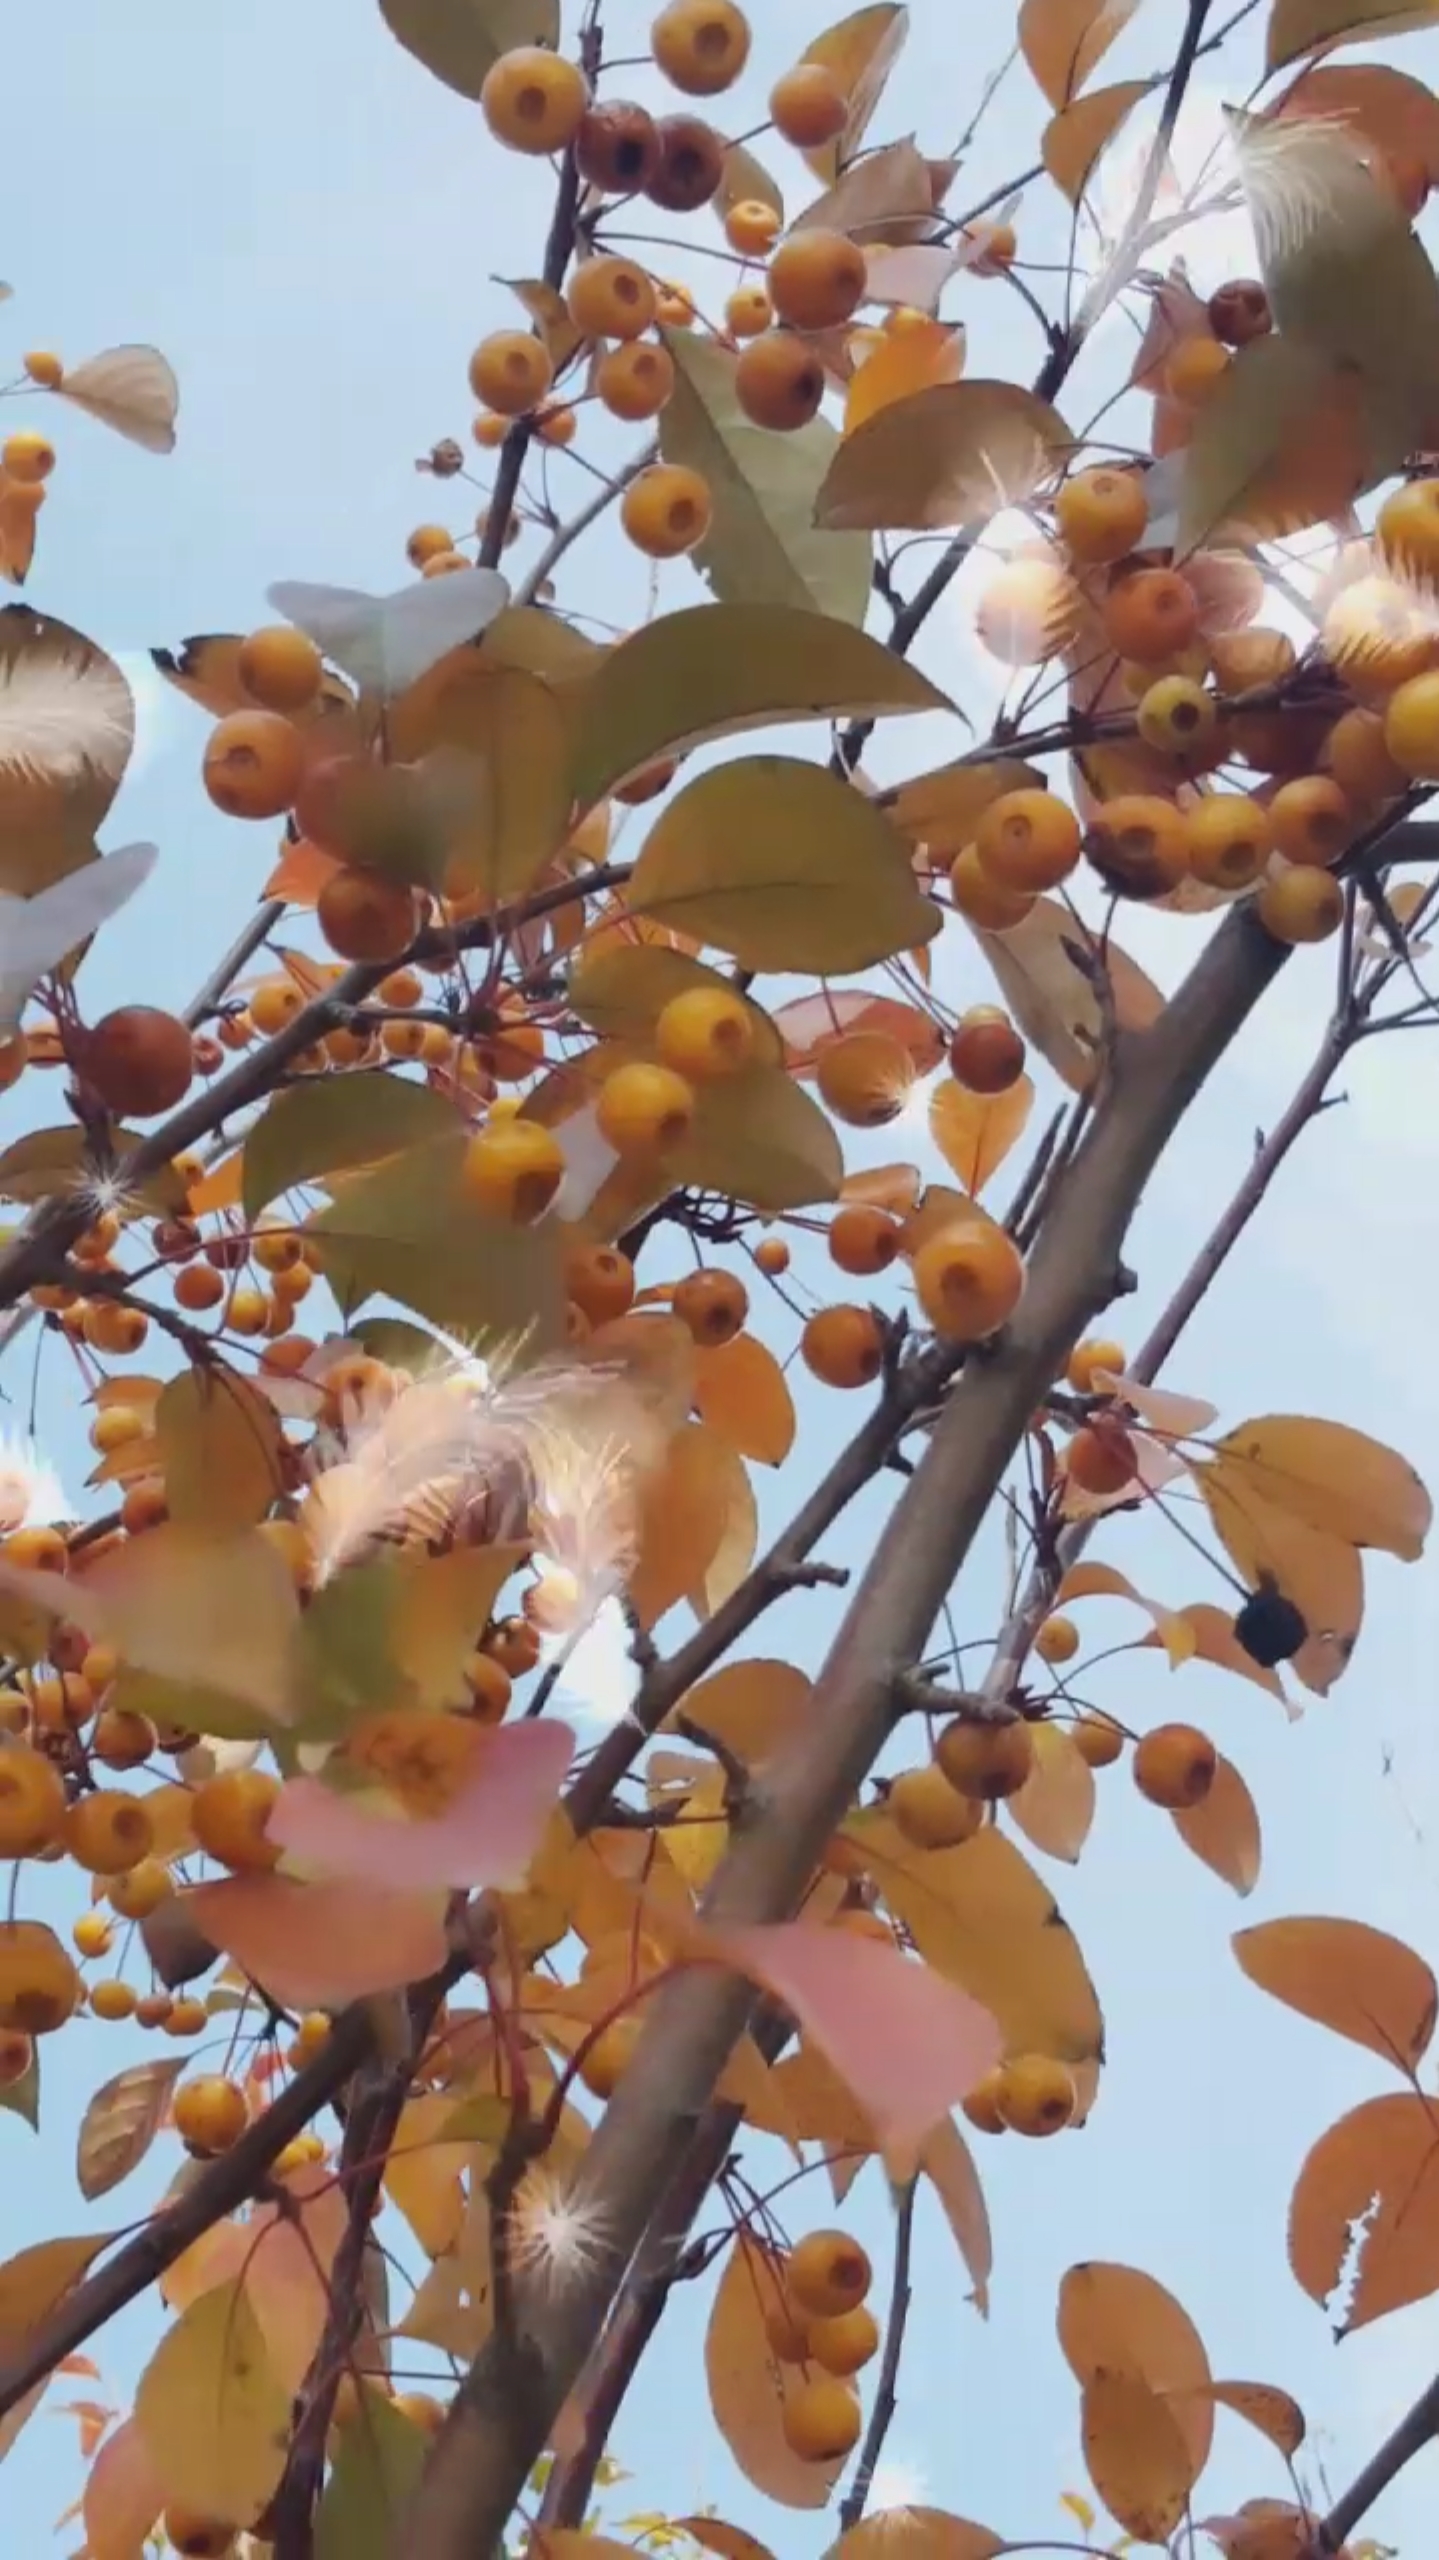 公园里的黄果子树真漂亮啊